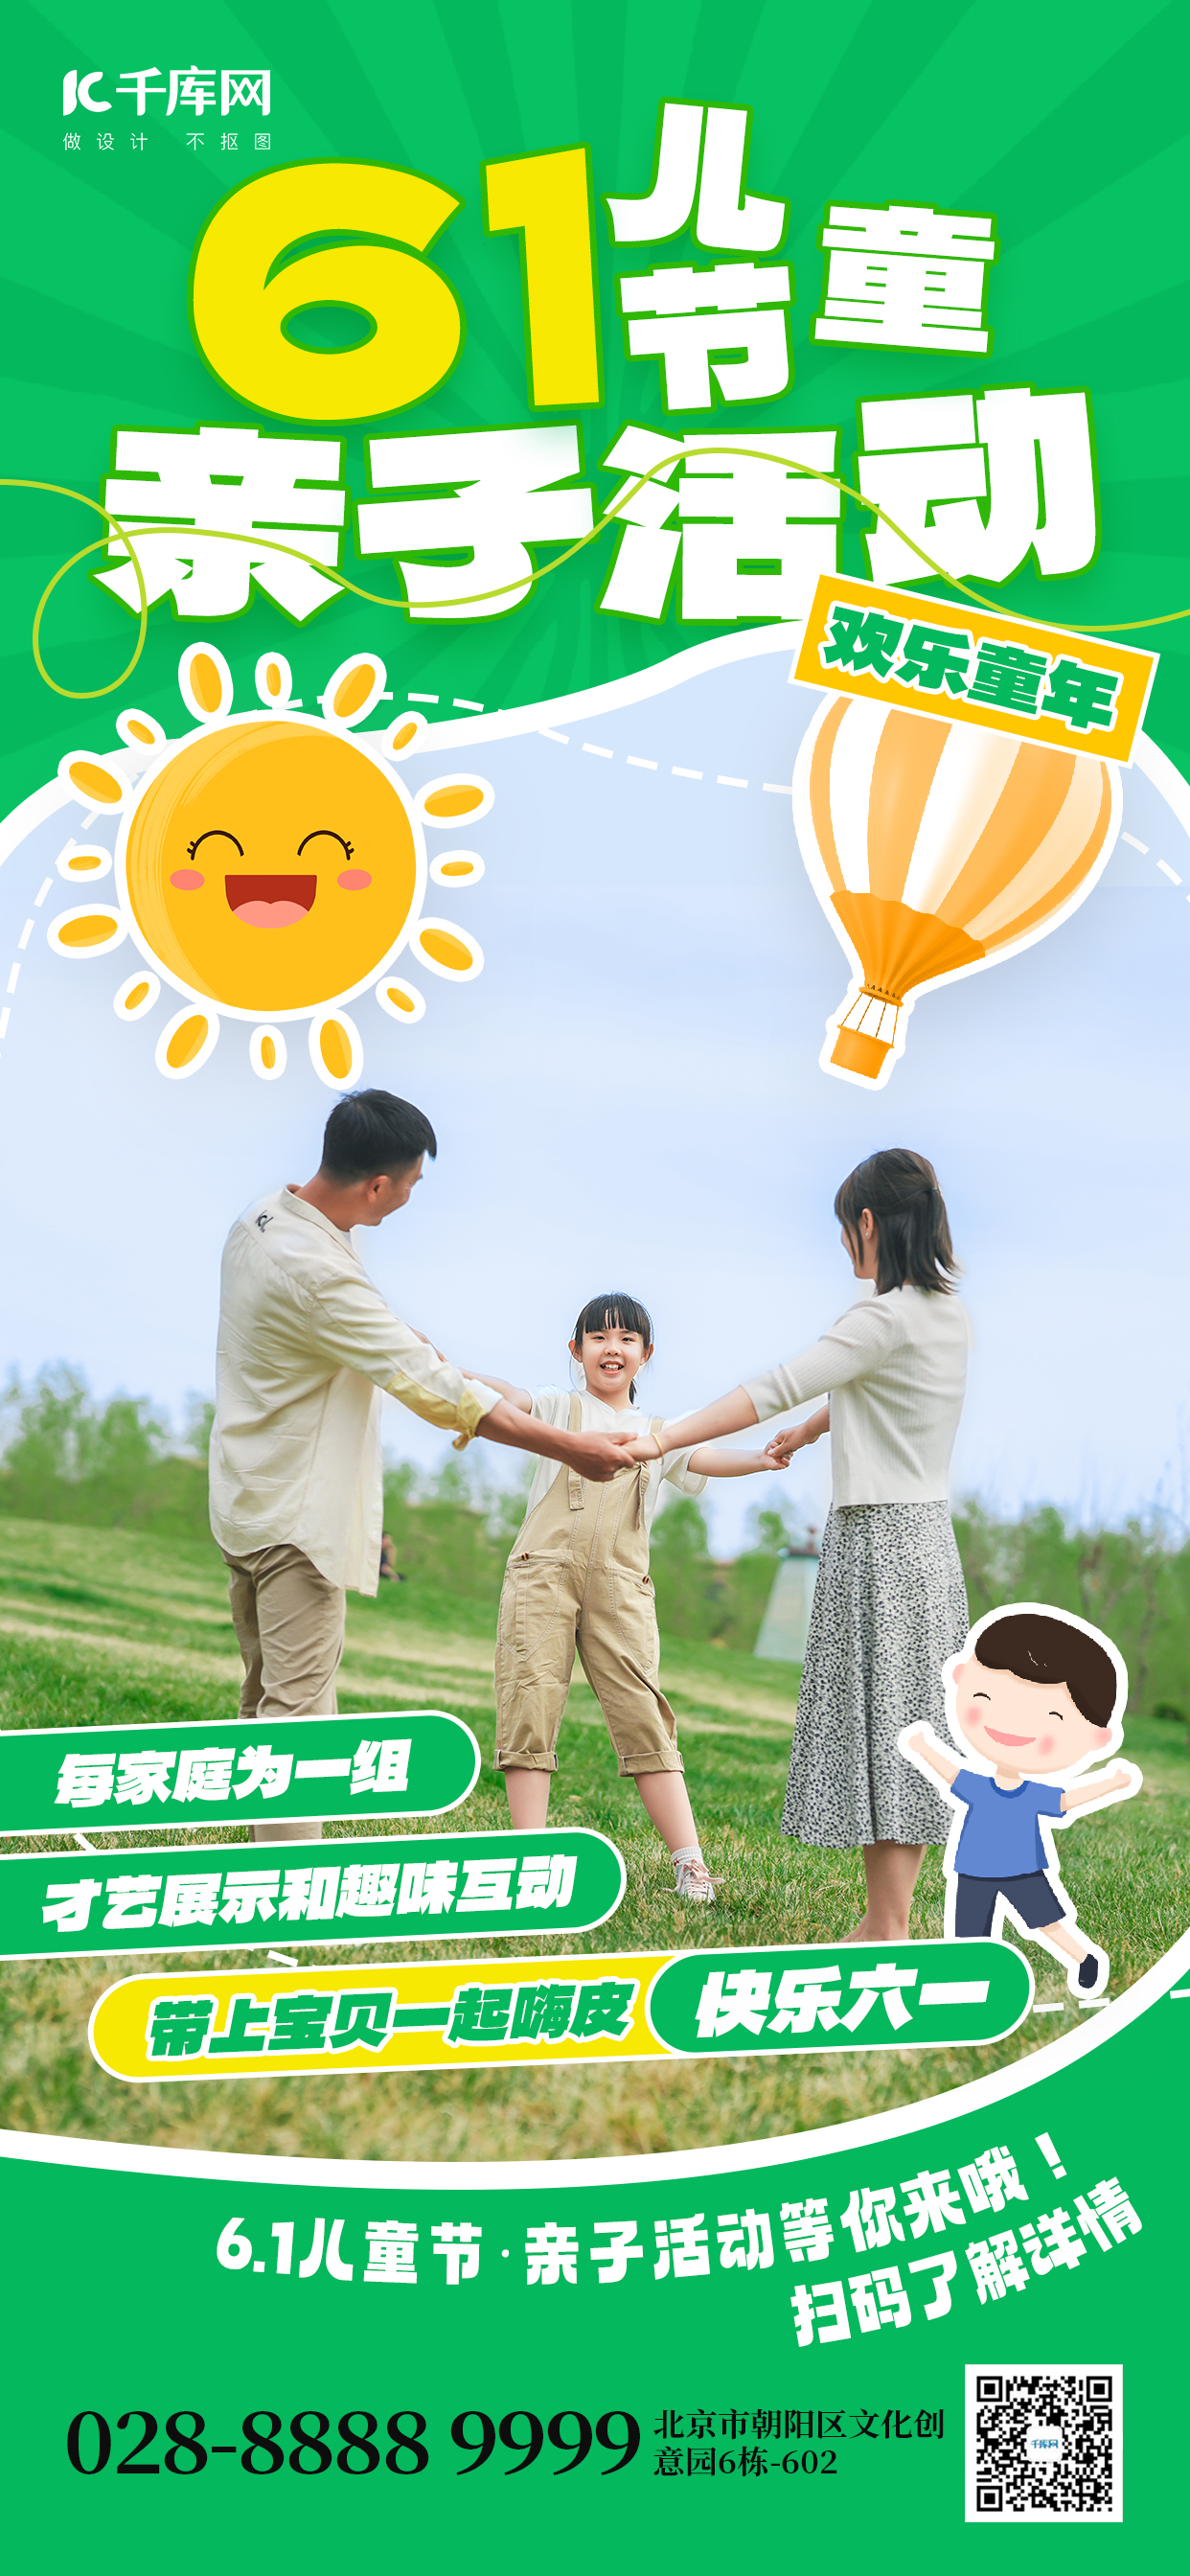 61儿童节亲子活动家庭绿色综艺风全屏海报图片